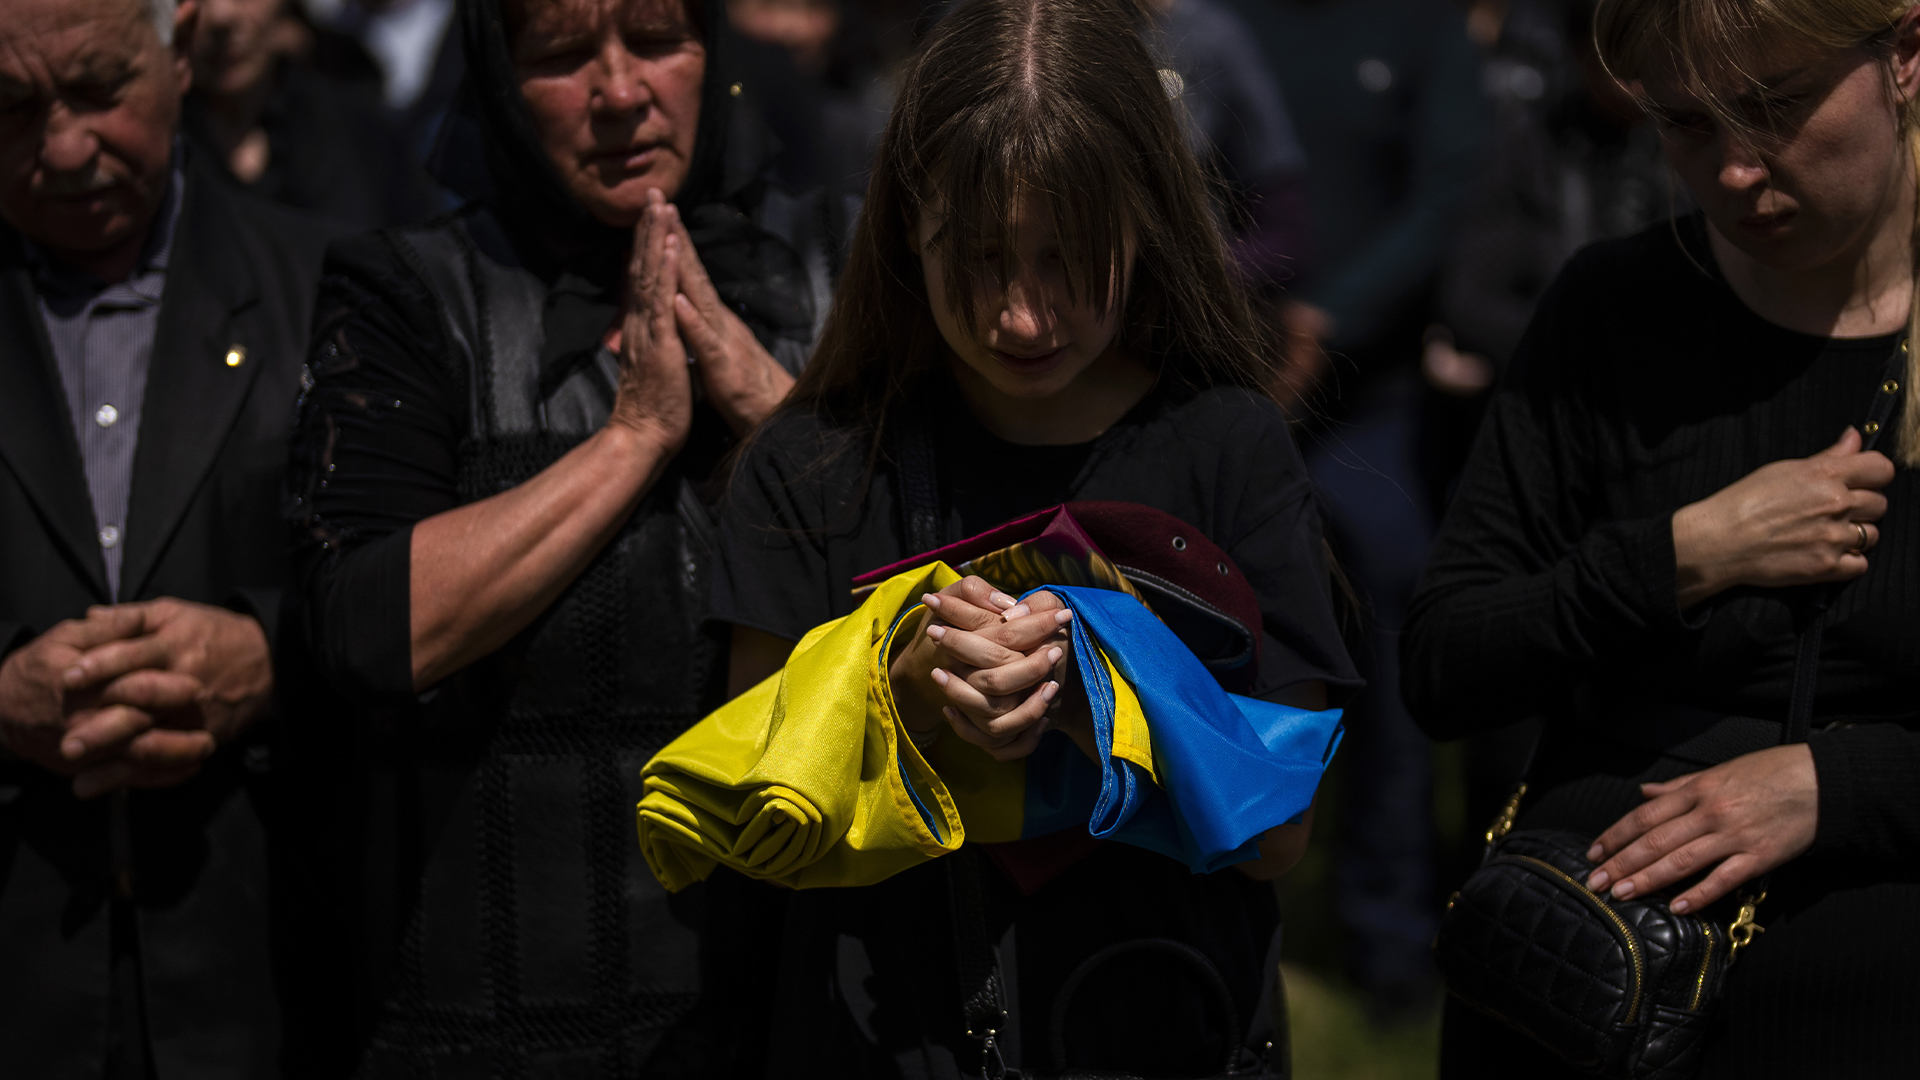 Des spécialistes en santé mentale veulent venir en aide aux réfugiés ukrainiens ayant fui leur pays victime de l'agression russe.